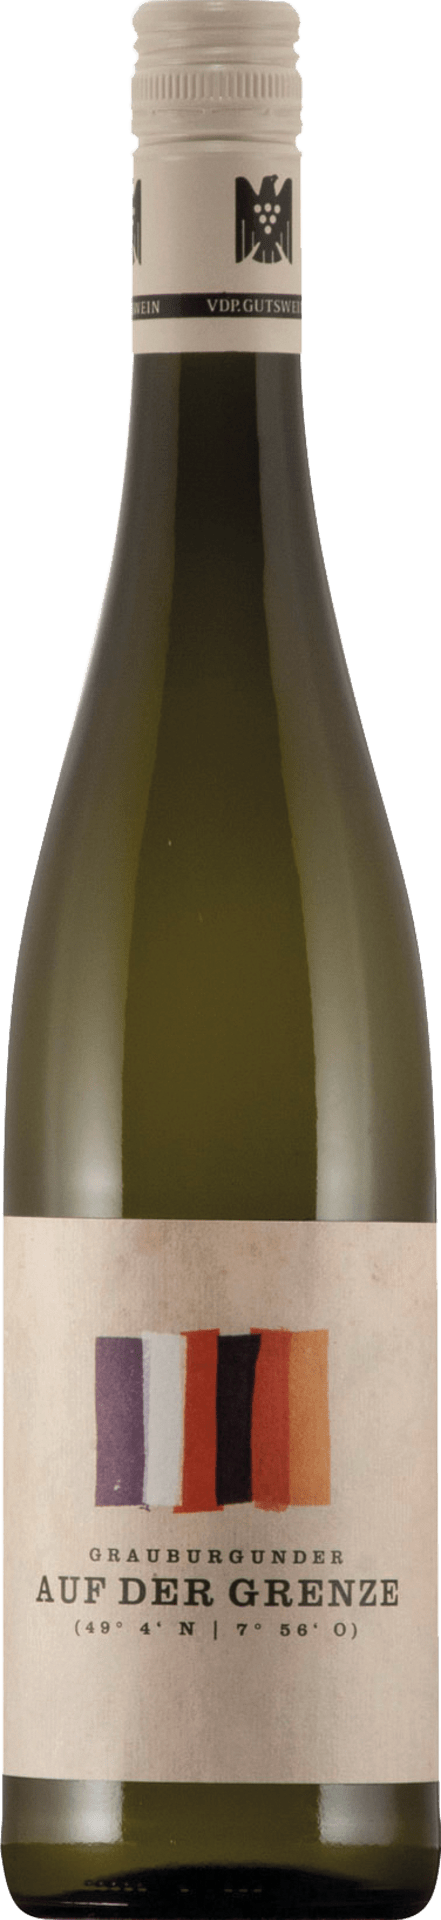 Grauburgunder Qualitätswein trocken "Auf der Grenze"